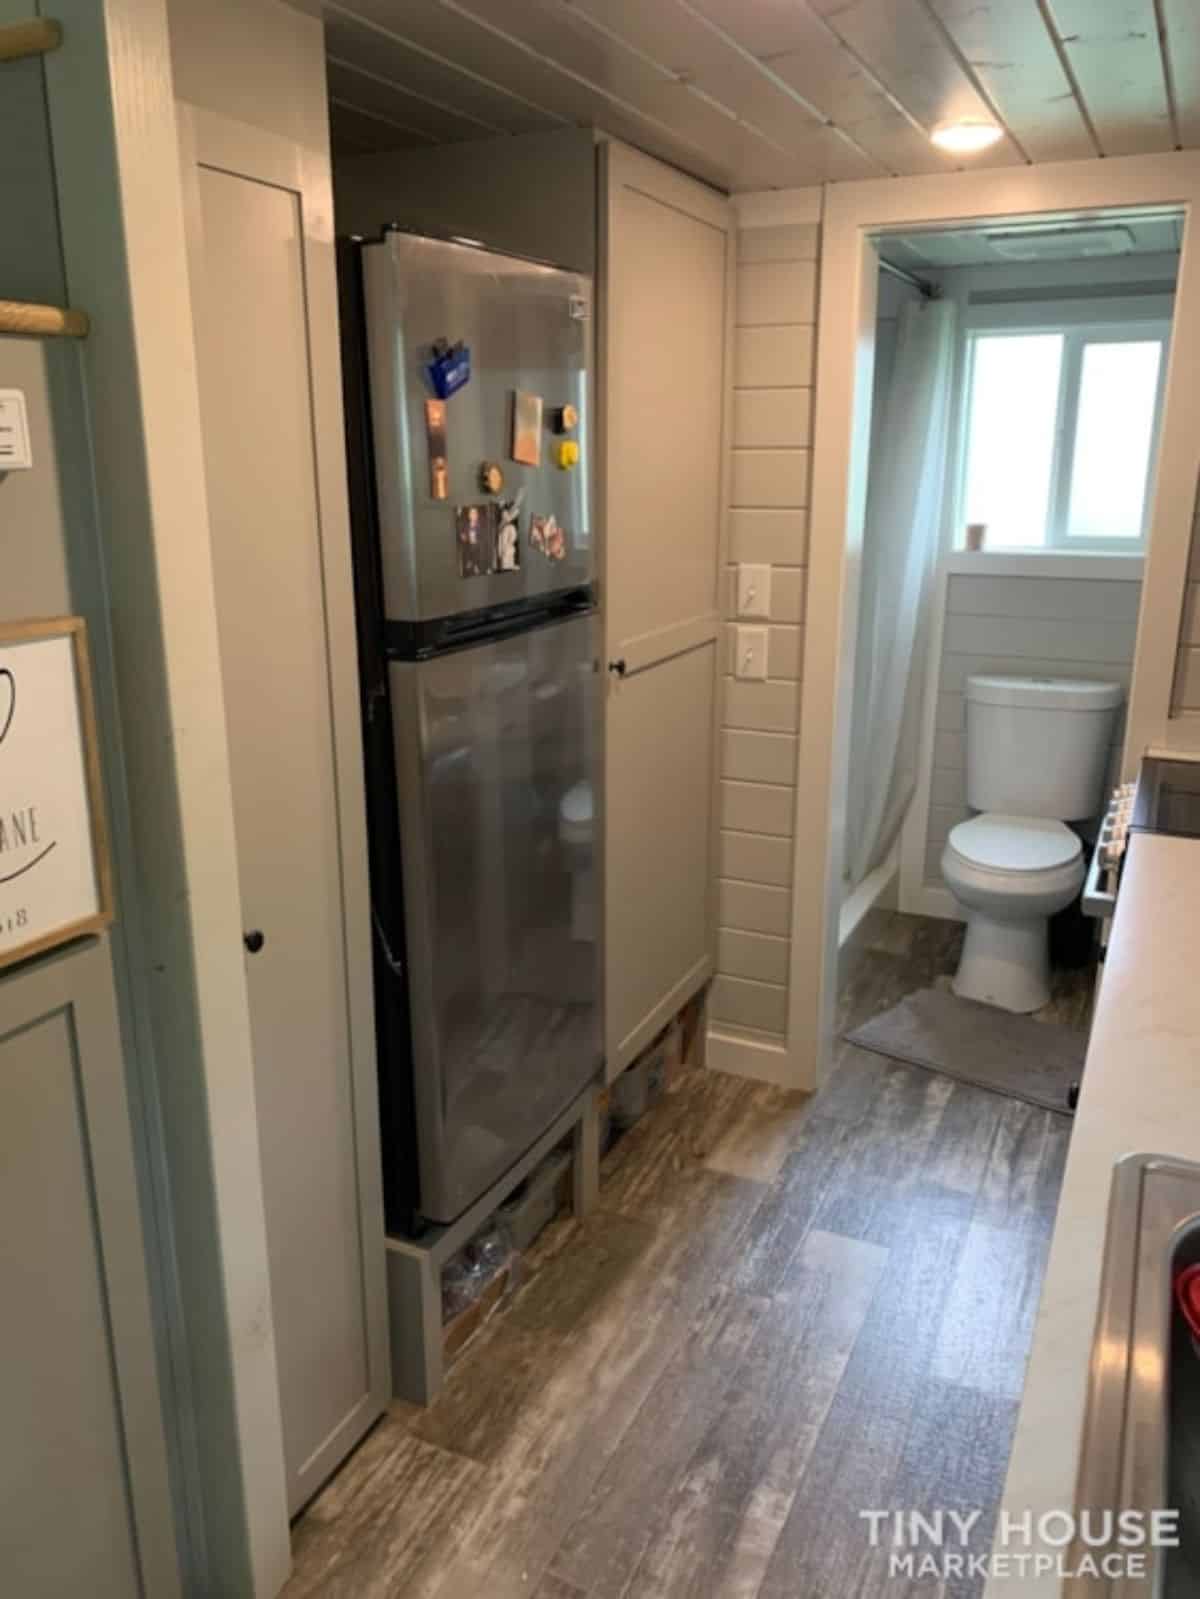 Huge  double door refrigerator in kitchen area